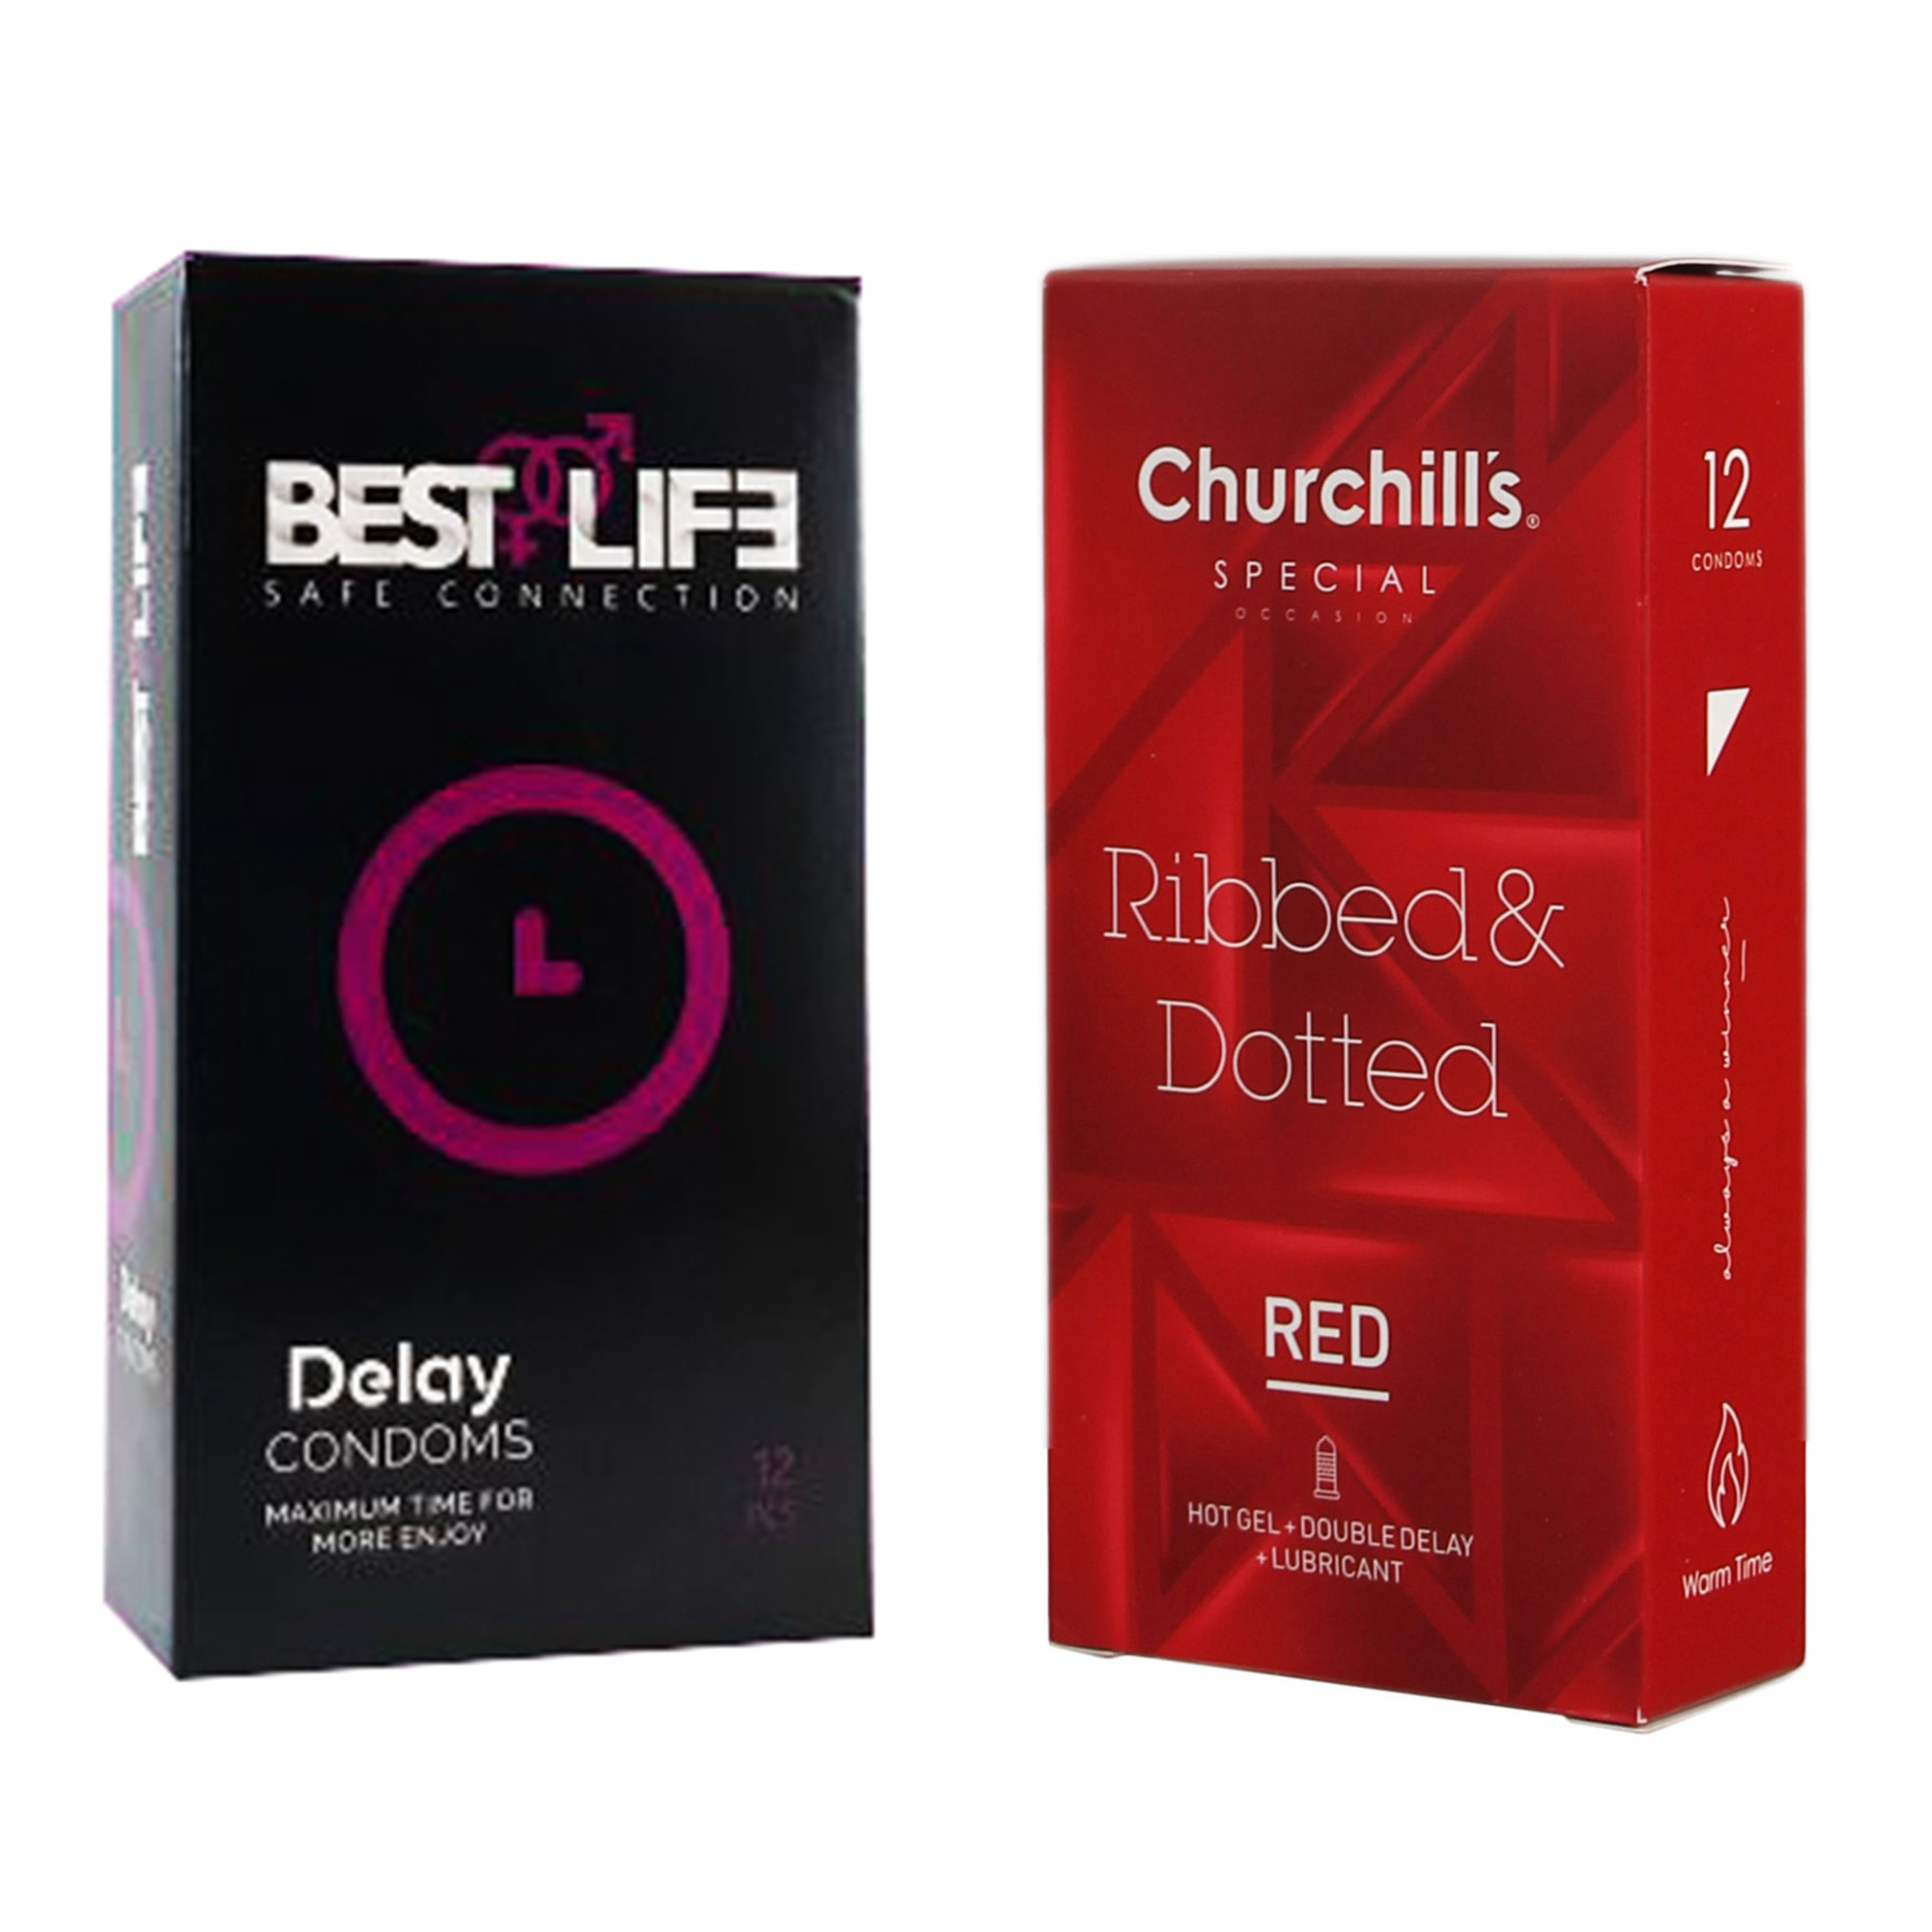 کاندوم چرچیلز مدل Ribbed & Dotted Red بسته 12 عددی به همراه کاندوم بست لایف مدل Delay بسته 12 عددی